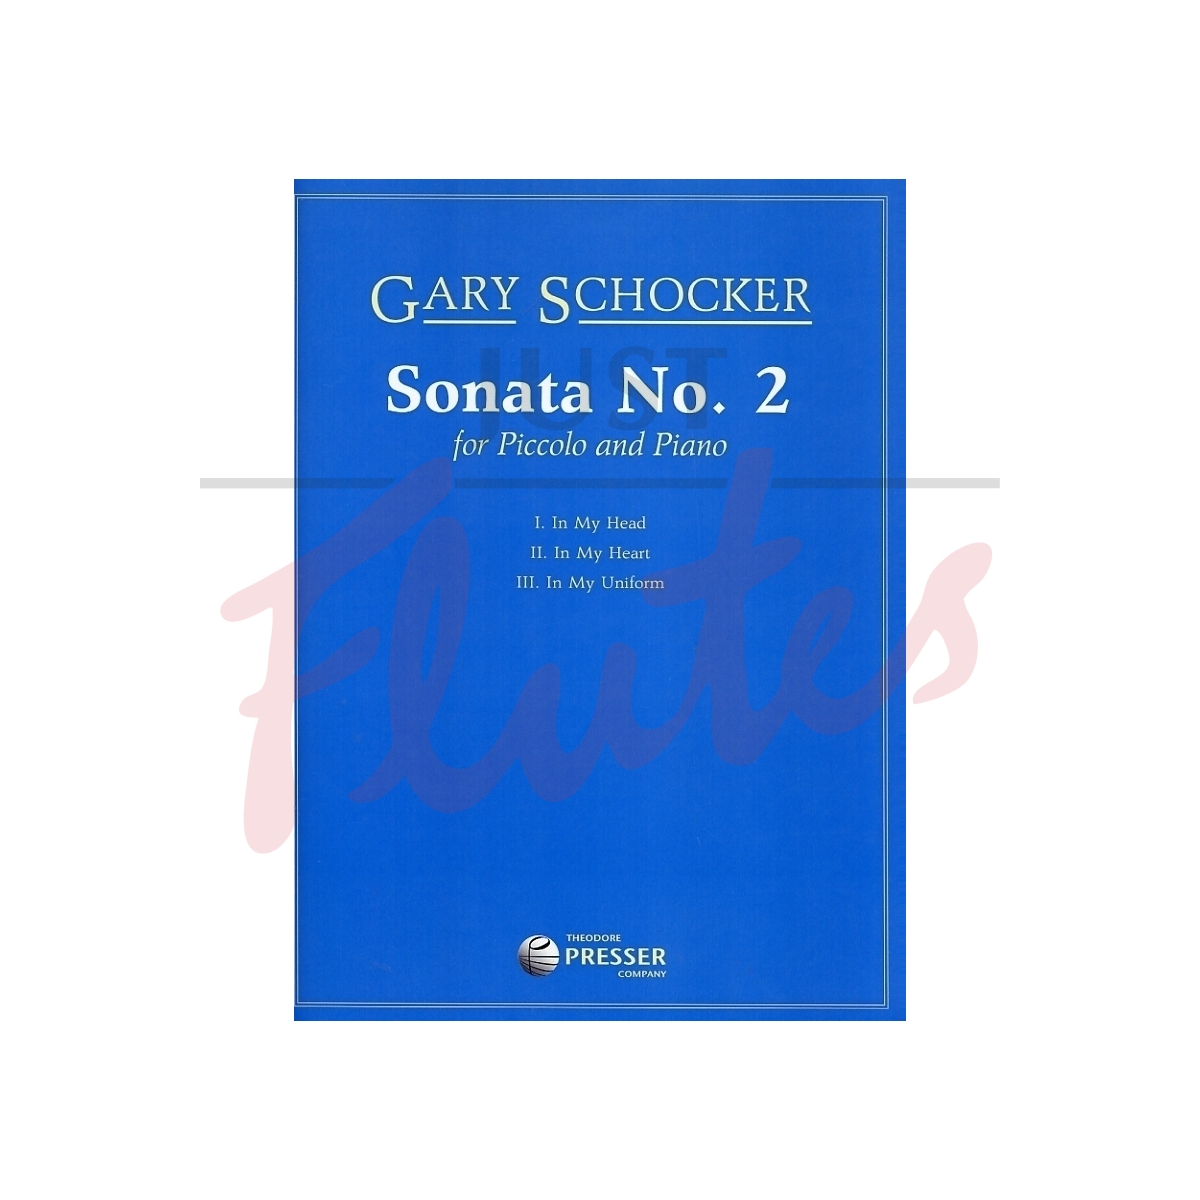 Sonata No. 2 for Piccolo and Piano